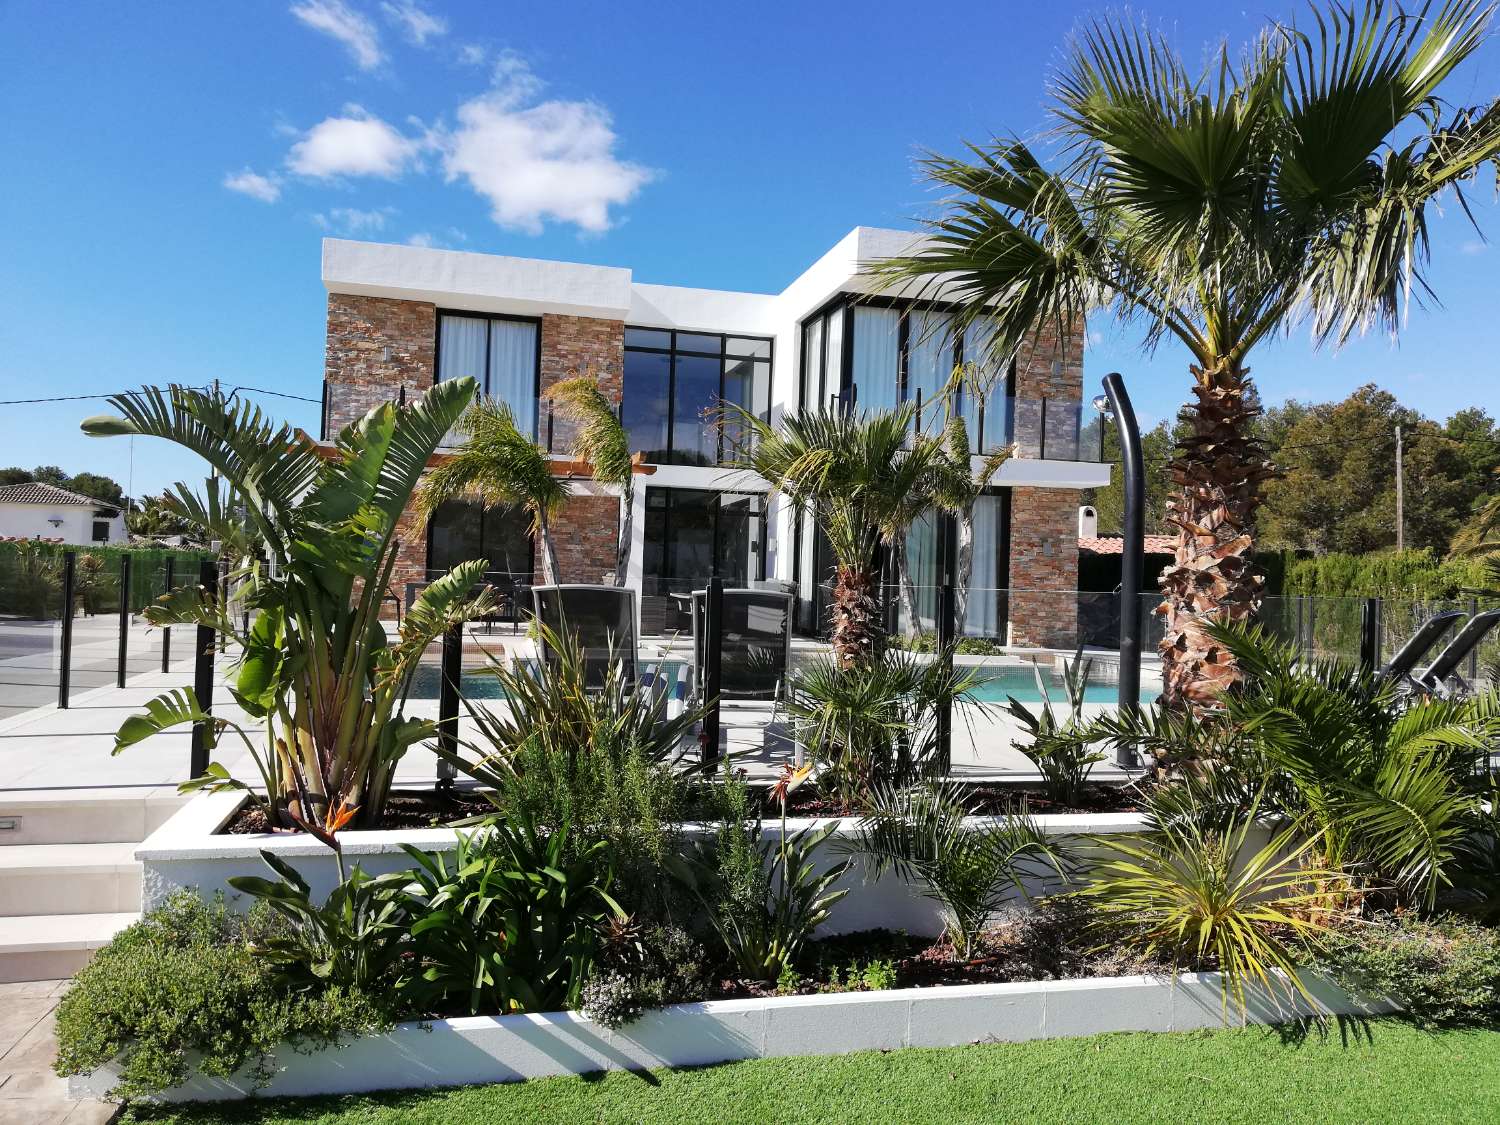 Stunning modern villa